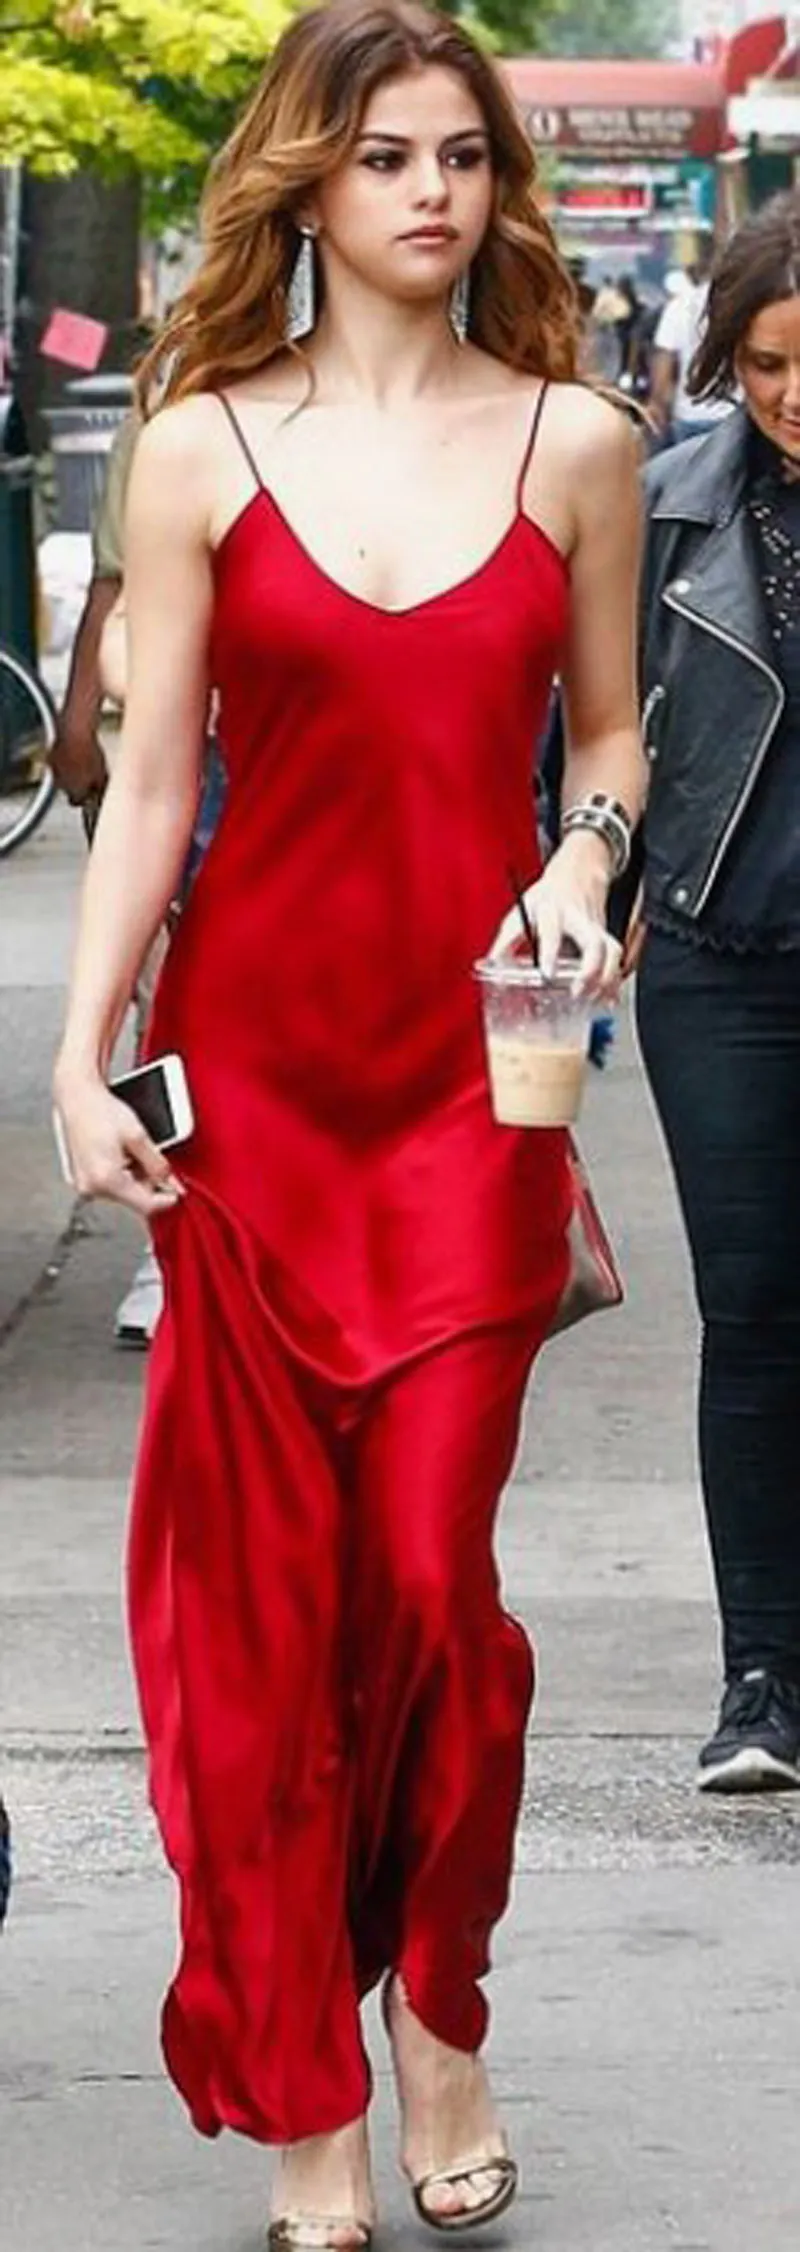 Selena Gomez Sizzles w dwóch zanurzonych szkarłatnych czerwonych sukienkach na strzelanie Sukienka w stylu ulicy